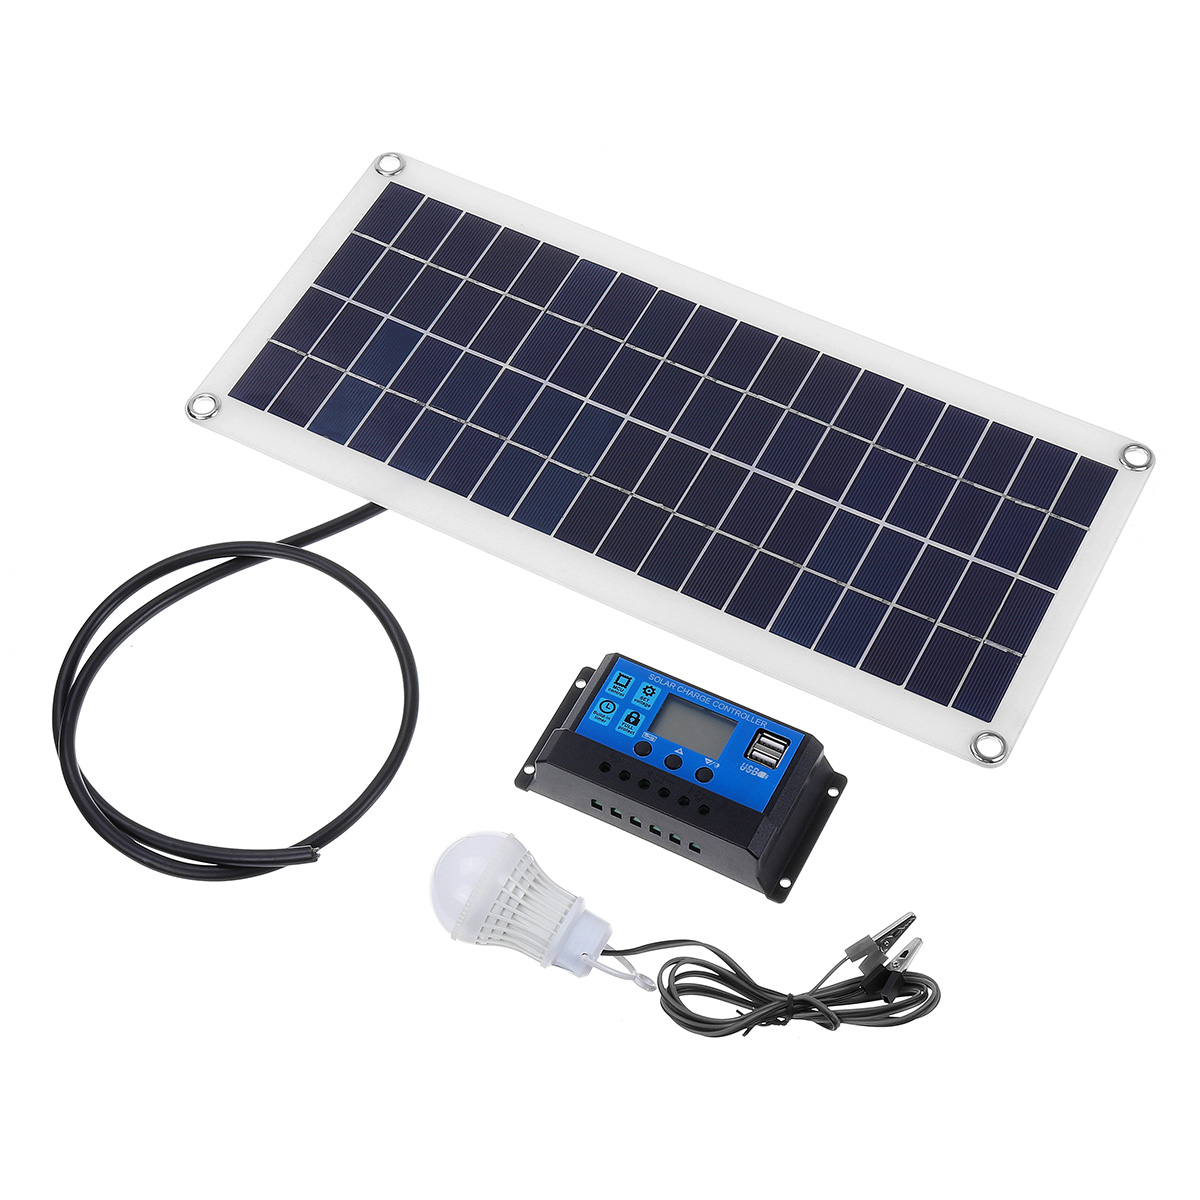 

10W Монокристаллическая Солнечная Панель Солнечная Контроллер Высокоэффективный моно модуль Солнечная Зарядная панель 5W Лампа